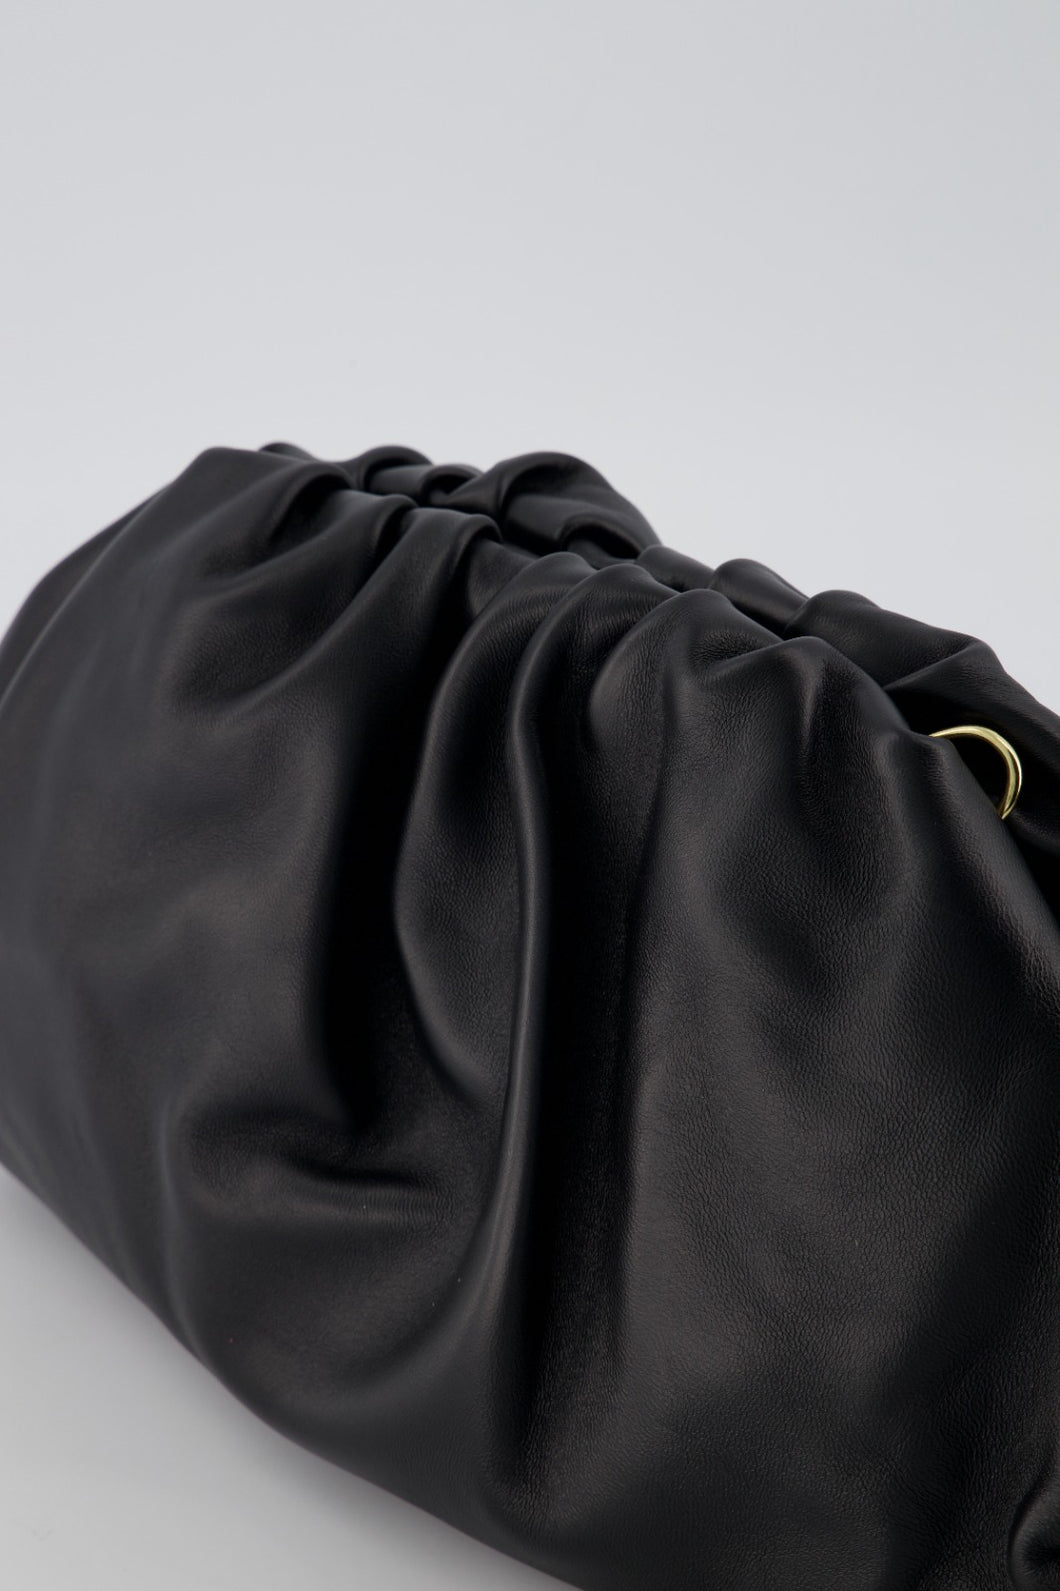 Zwarte Tas Estelle is een stijlvolle vrouwelijke lederen handtas van lamsleer. De leren crossbody tas wordt geleverd met een lang verstelbaar hengsel, heeft een groot binnen vak en een afsluitbaar vakje aan de binnenzijde.